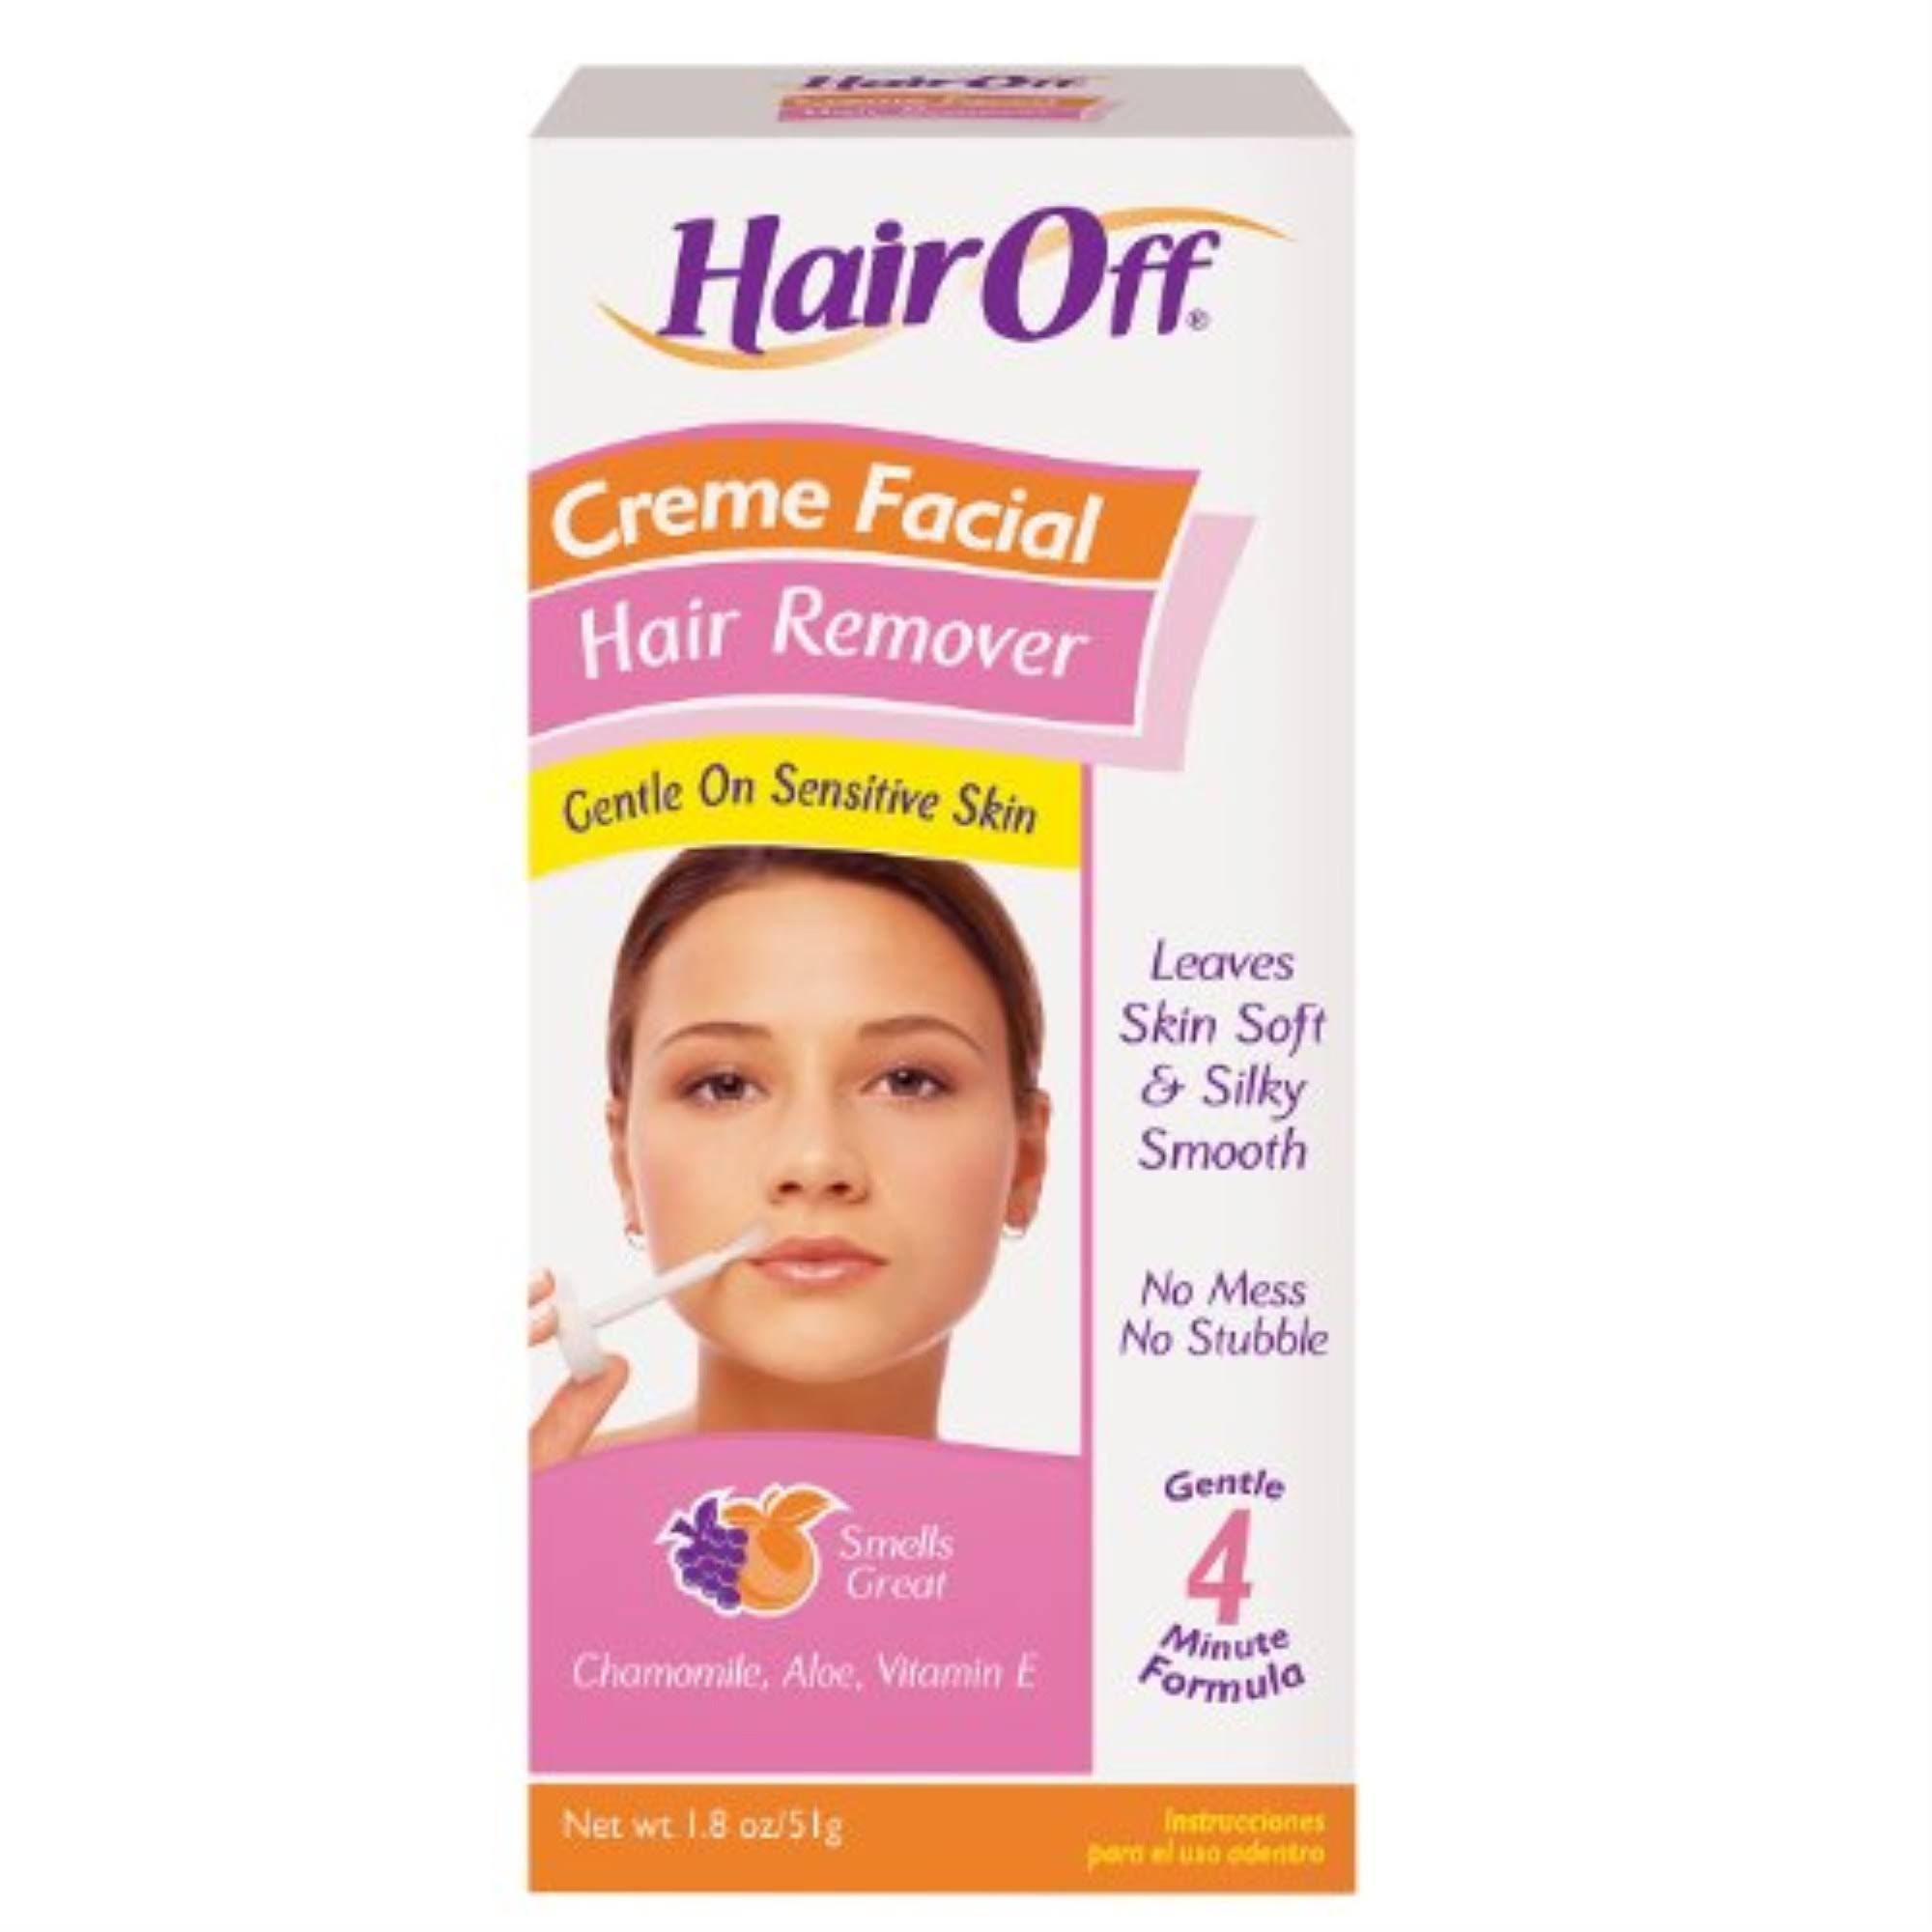 Hair Off Creme Facial Hair Remover